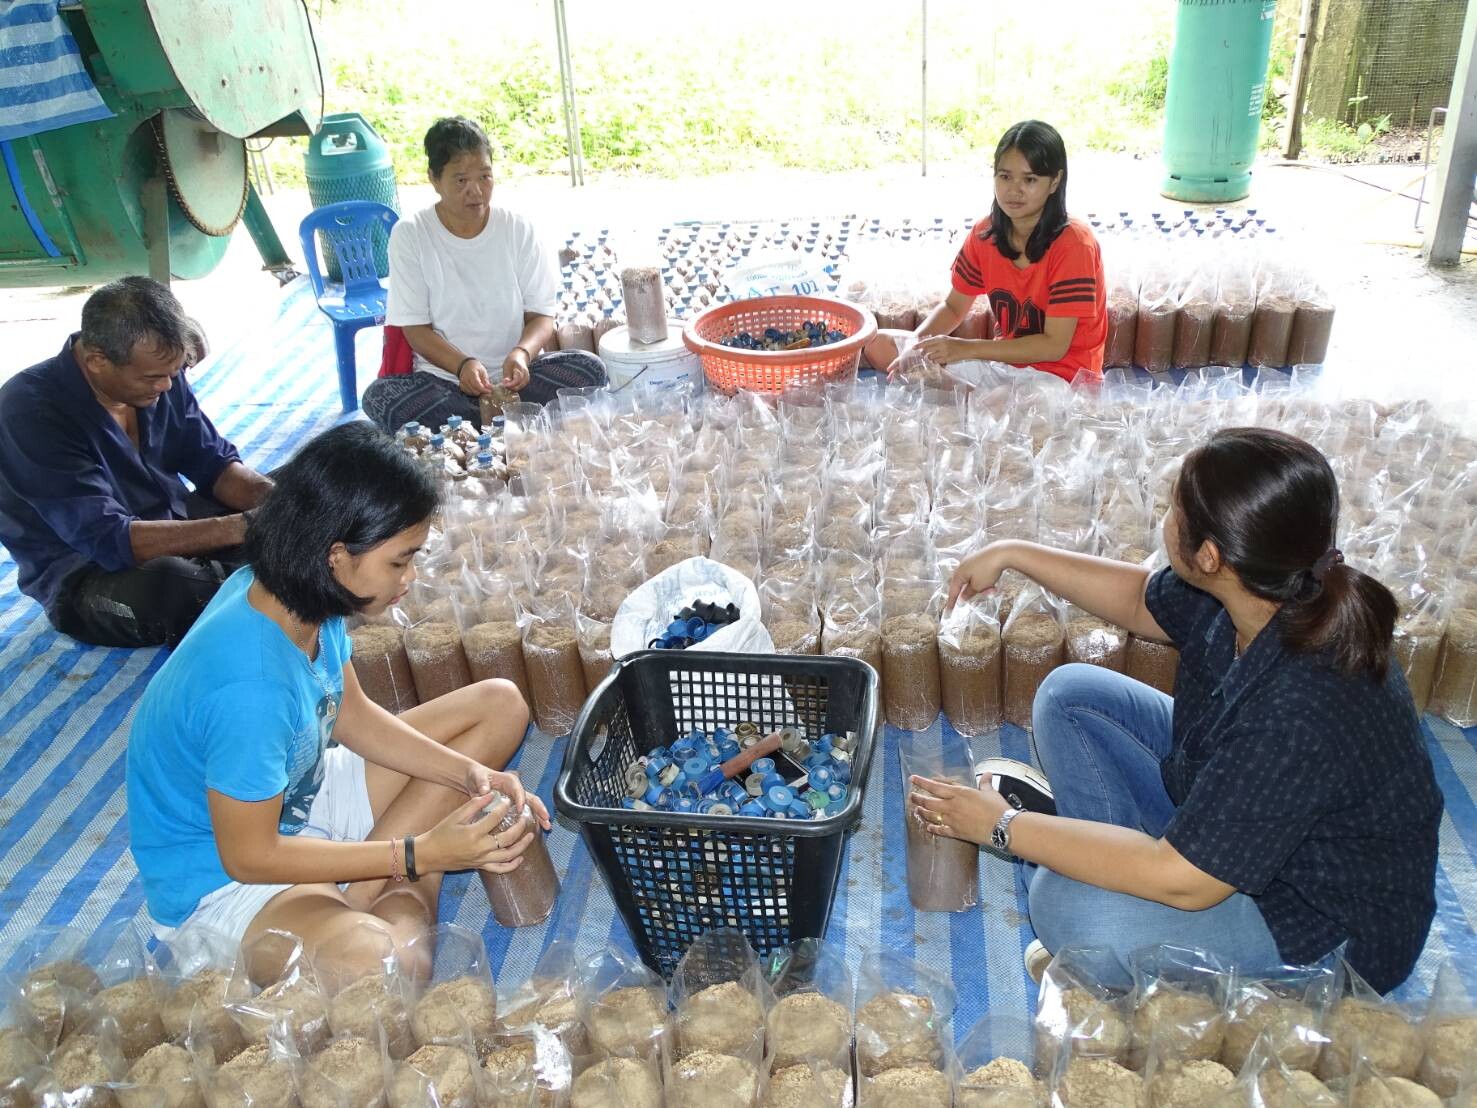 กองทุนฟื้นฟูฯ ลุยยกระดับบริการ ลั่นพร้อมเต็มร้อยช่วยเกษตรกรทั่วไทยแก้หนี้ ฟื้นฟูอาชีพ